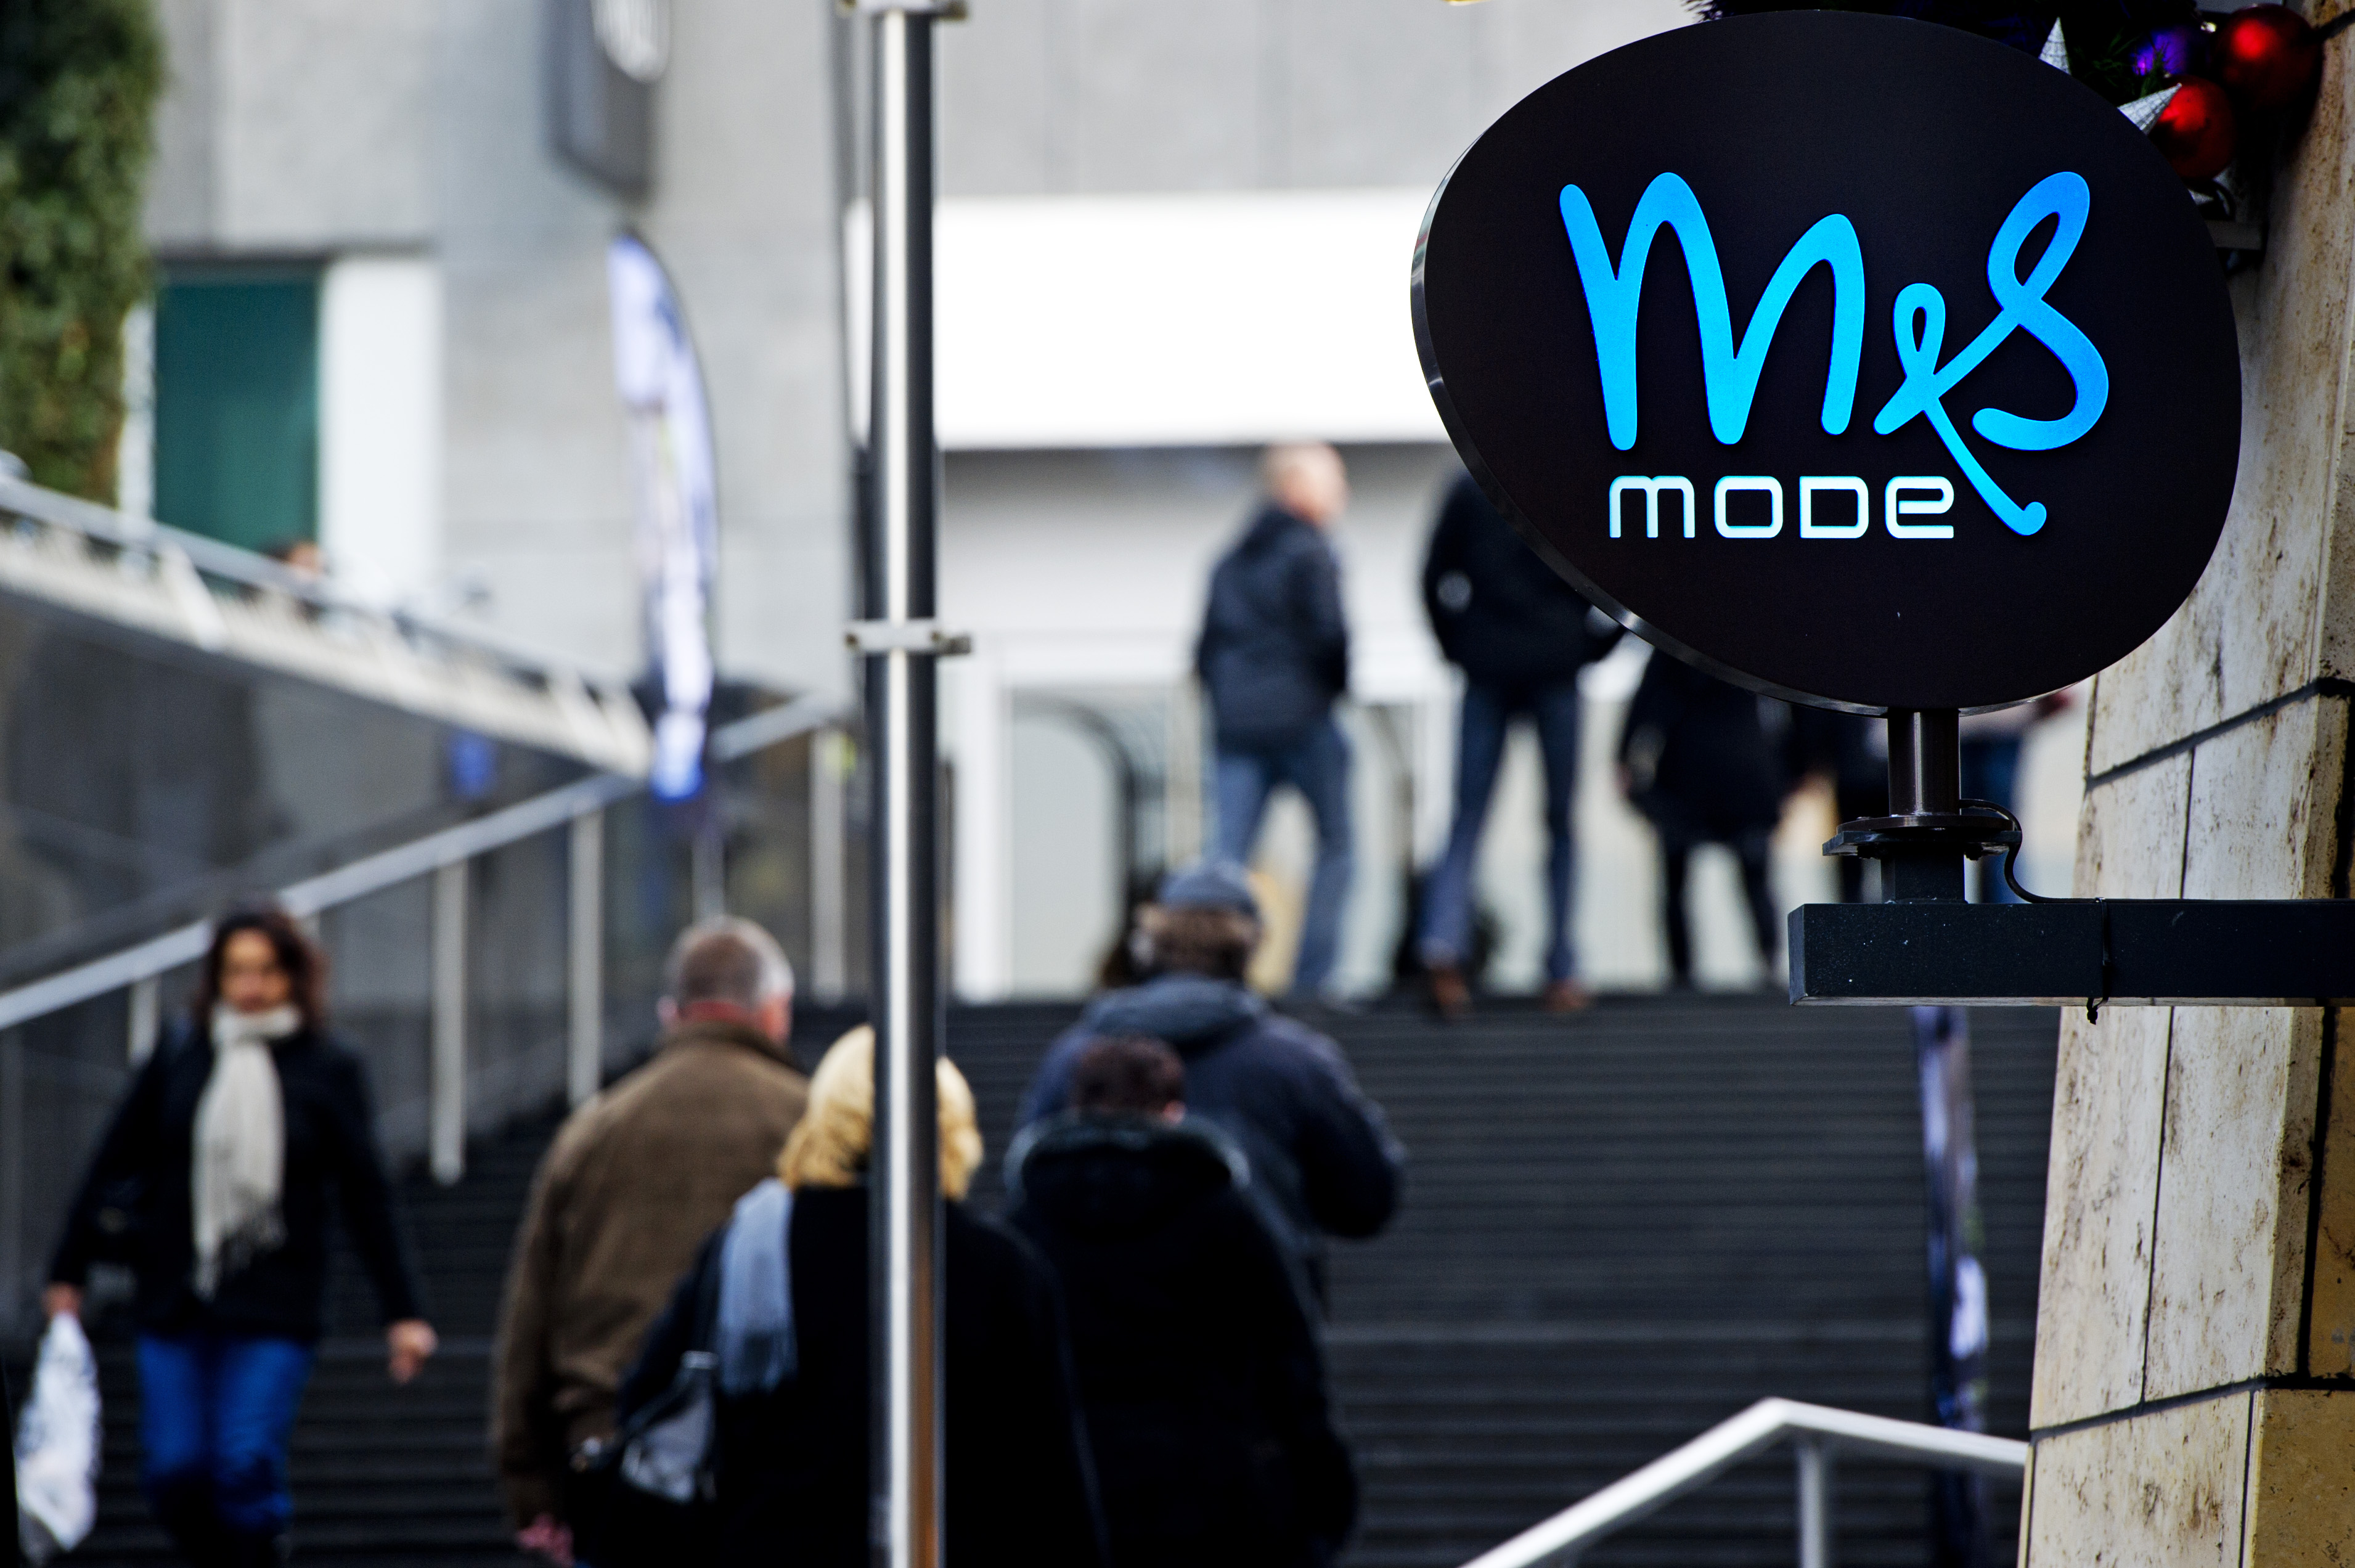 MS Mode houdt in Nederland 95 van de oorspronkelijke 130 winkels open. De failliete dameskledingwinkelketen maakte onlangs al een doorstart, maar het was toen nog niet duidelijk hoeveel filialen gered konden worden. Alle medewerkers die nu werkzaam zijn voor MS Mode behouden hun baan, werd dinsdag bekend. De keten blijft in afgeslankte vorm ook in andere landen bestaan. In België blijven 24 vestigingen behouden, Luxemburg telt vanaf januari 5 vestigingen van MS Mode en Spanje behoudt 32 winkels.